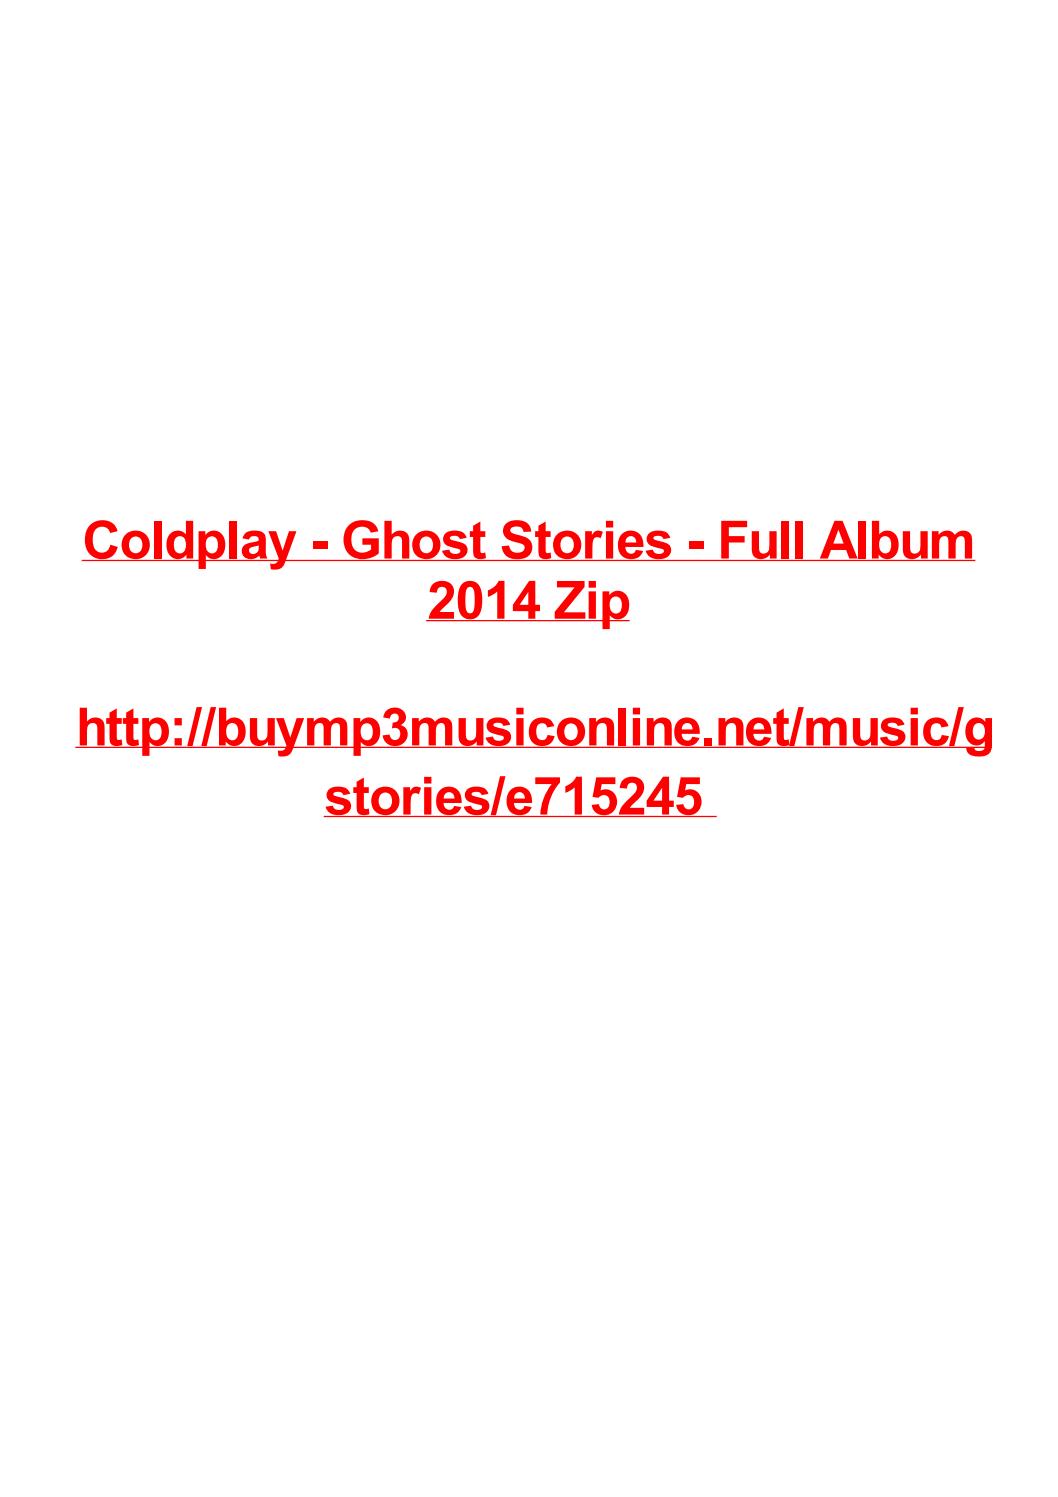 Coldplay Album Download Zip